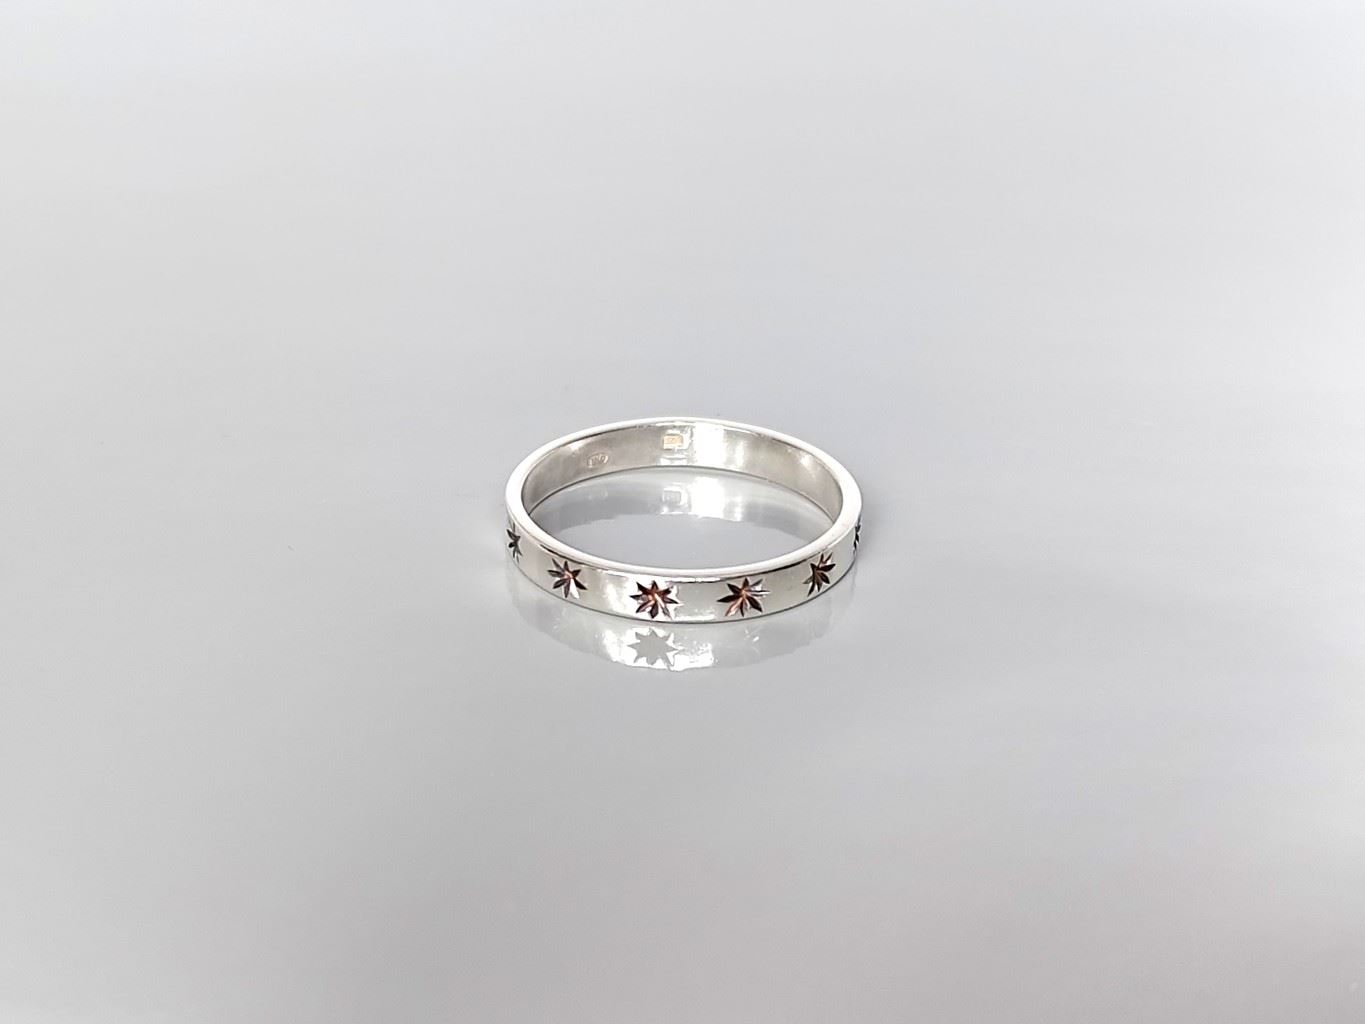 Stříbrný prsten hvězdičkový, stříbro Ag 925 * Star silver ring